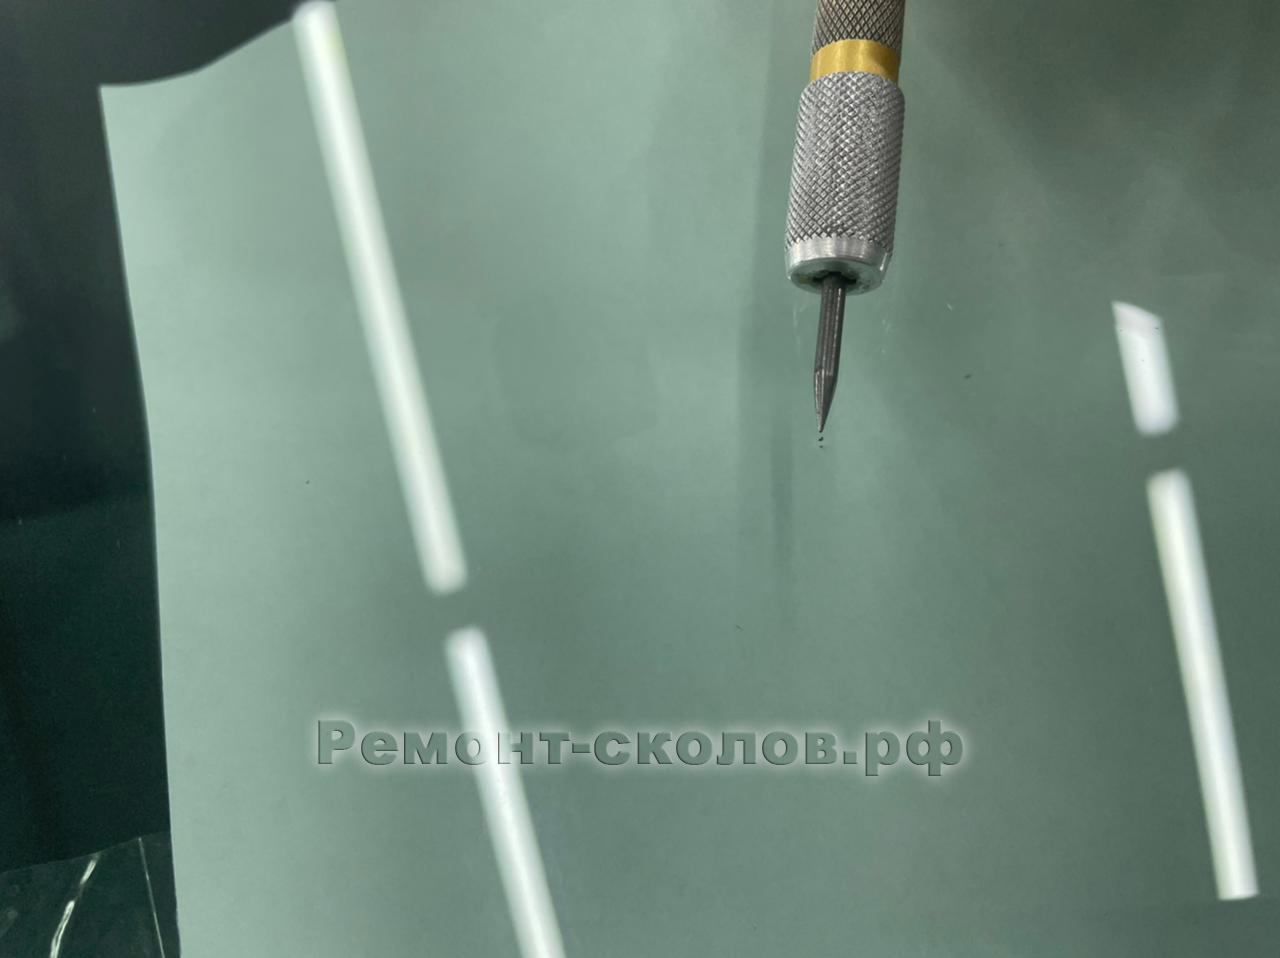 Skoda ремонт скола на лобовом стекле в ЮЗАО